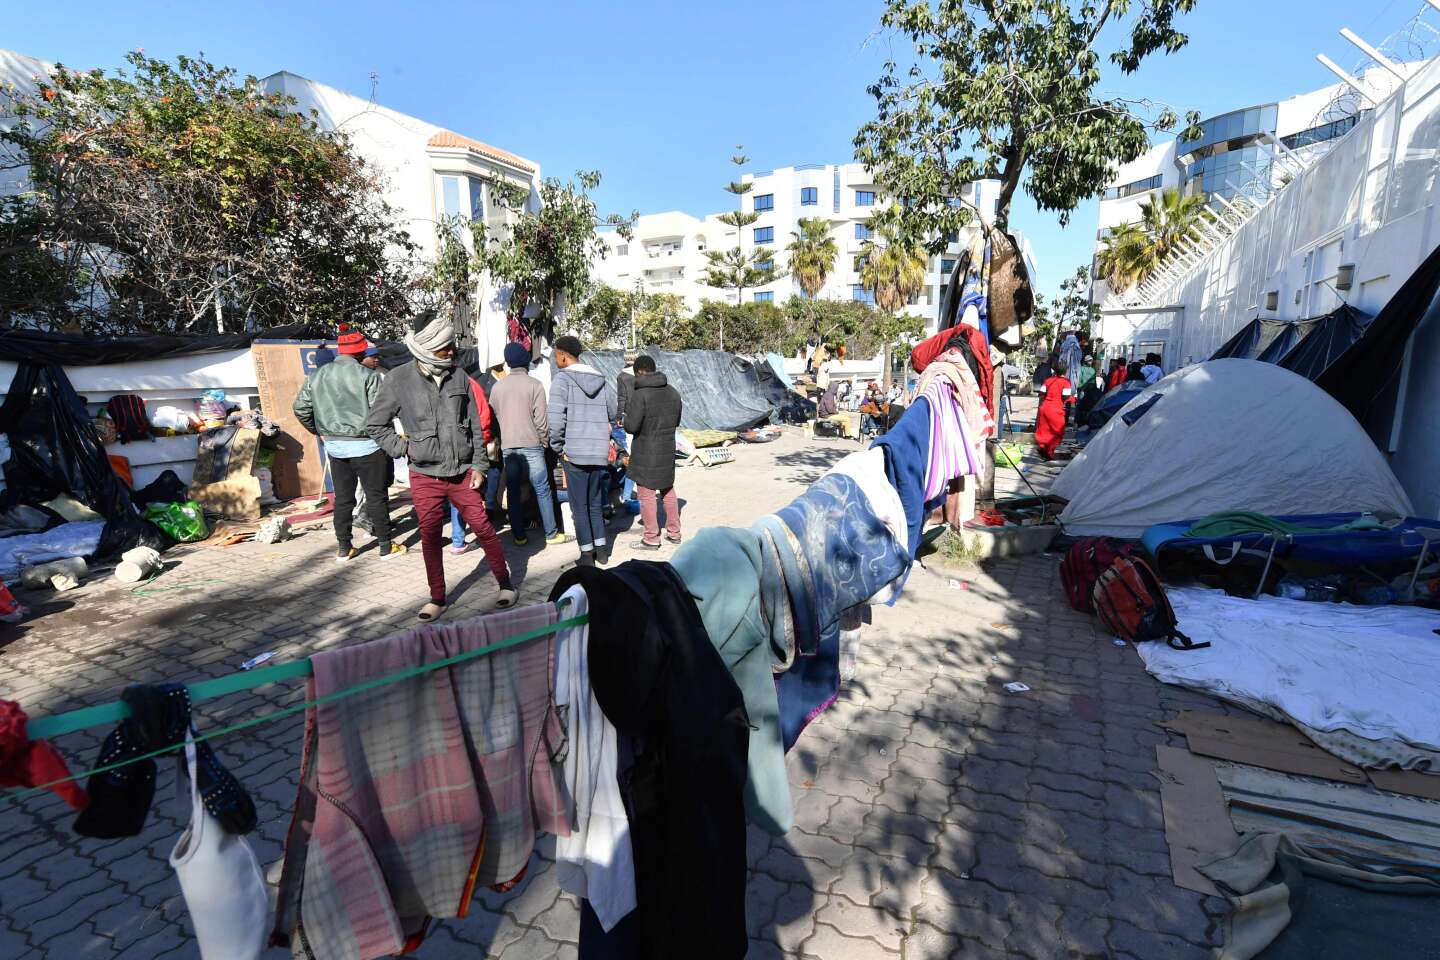 Tunisie : le président, Kaïs Saïed, refuse les fonds européens pour les migrants, qu’il considère comme de la « charité »